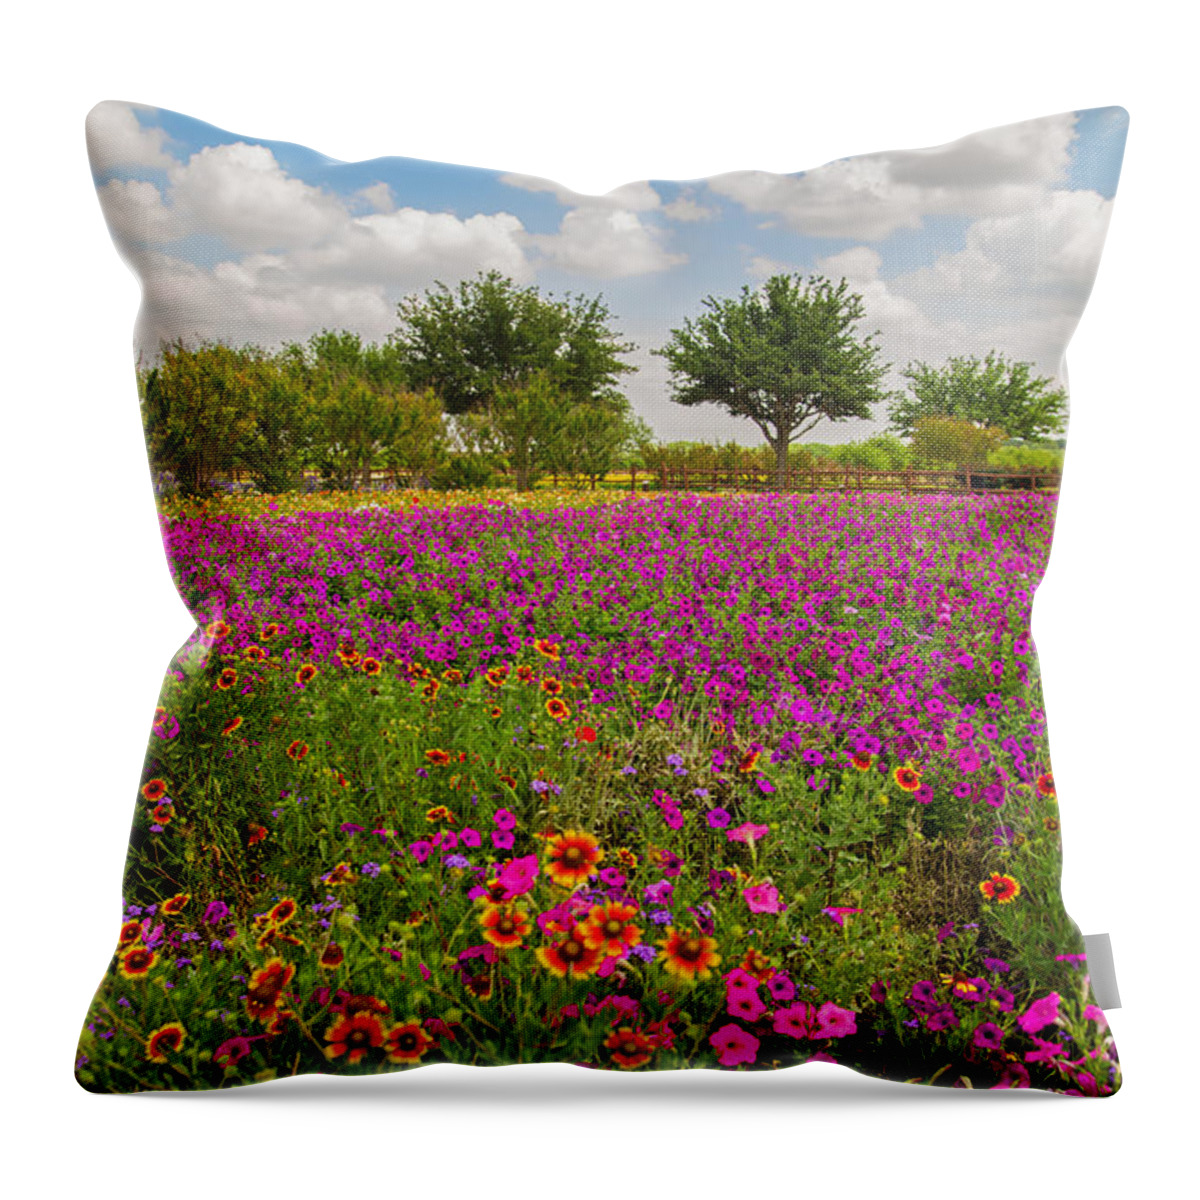 Flower Throw Pillow featuring the photograph Wildseed Garden by Lynn Bauer